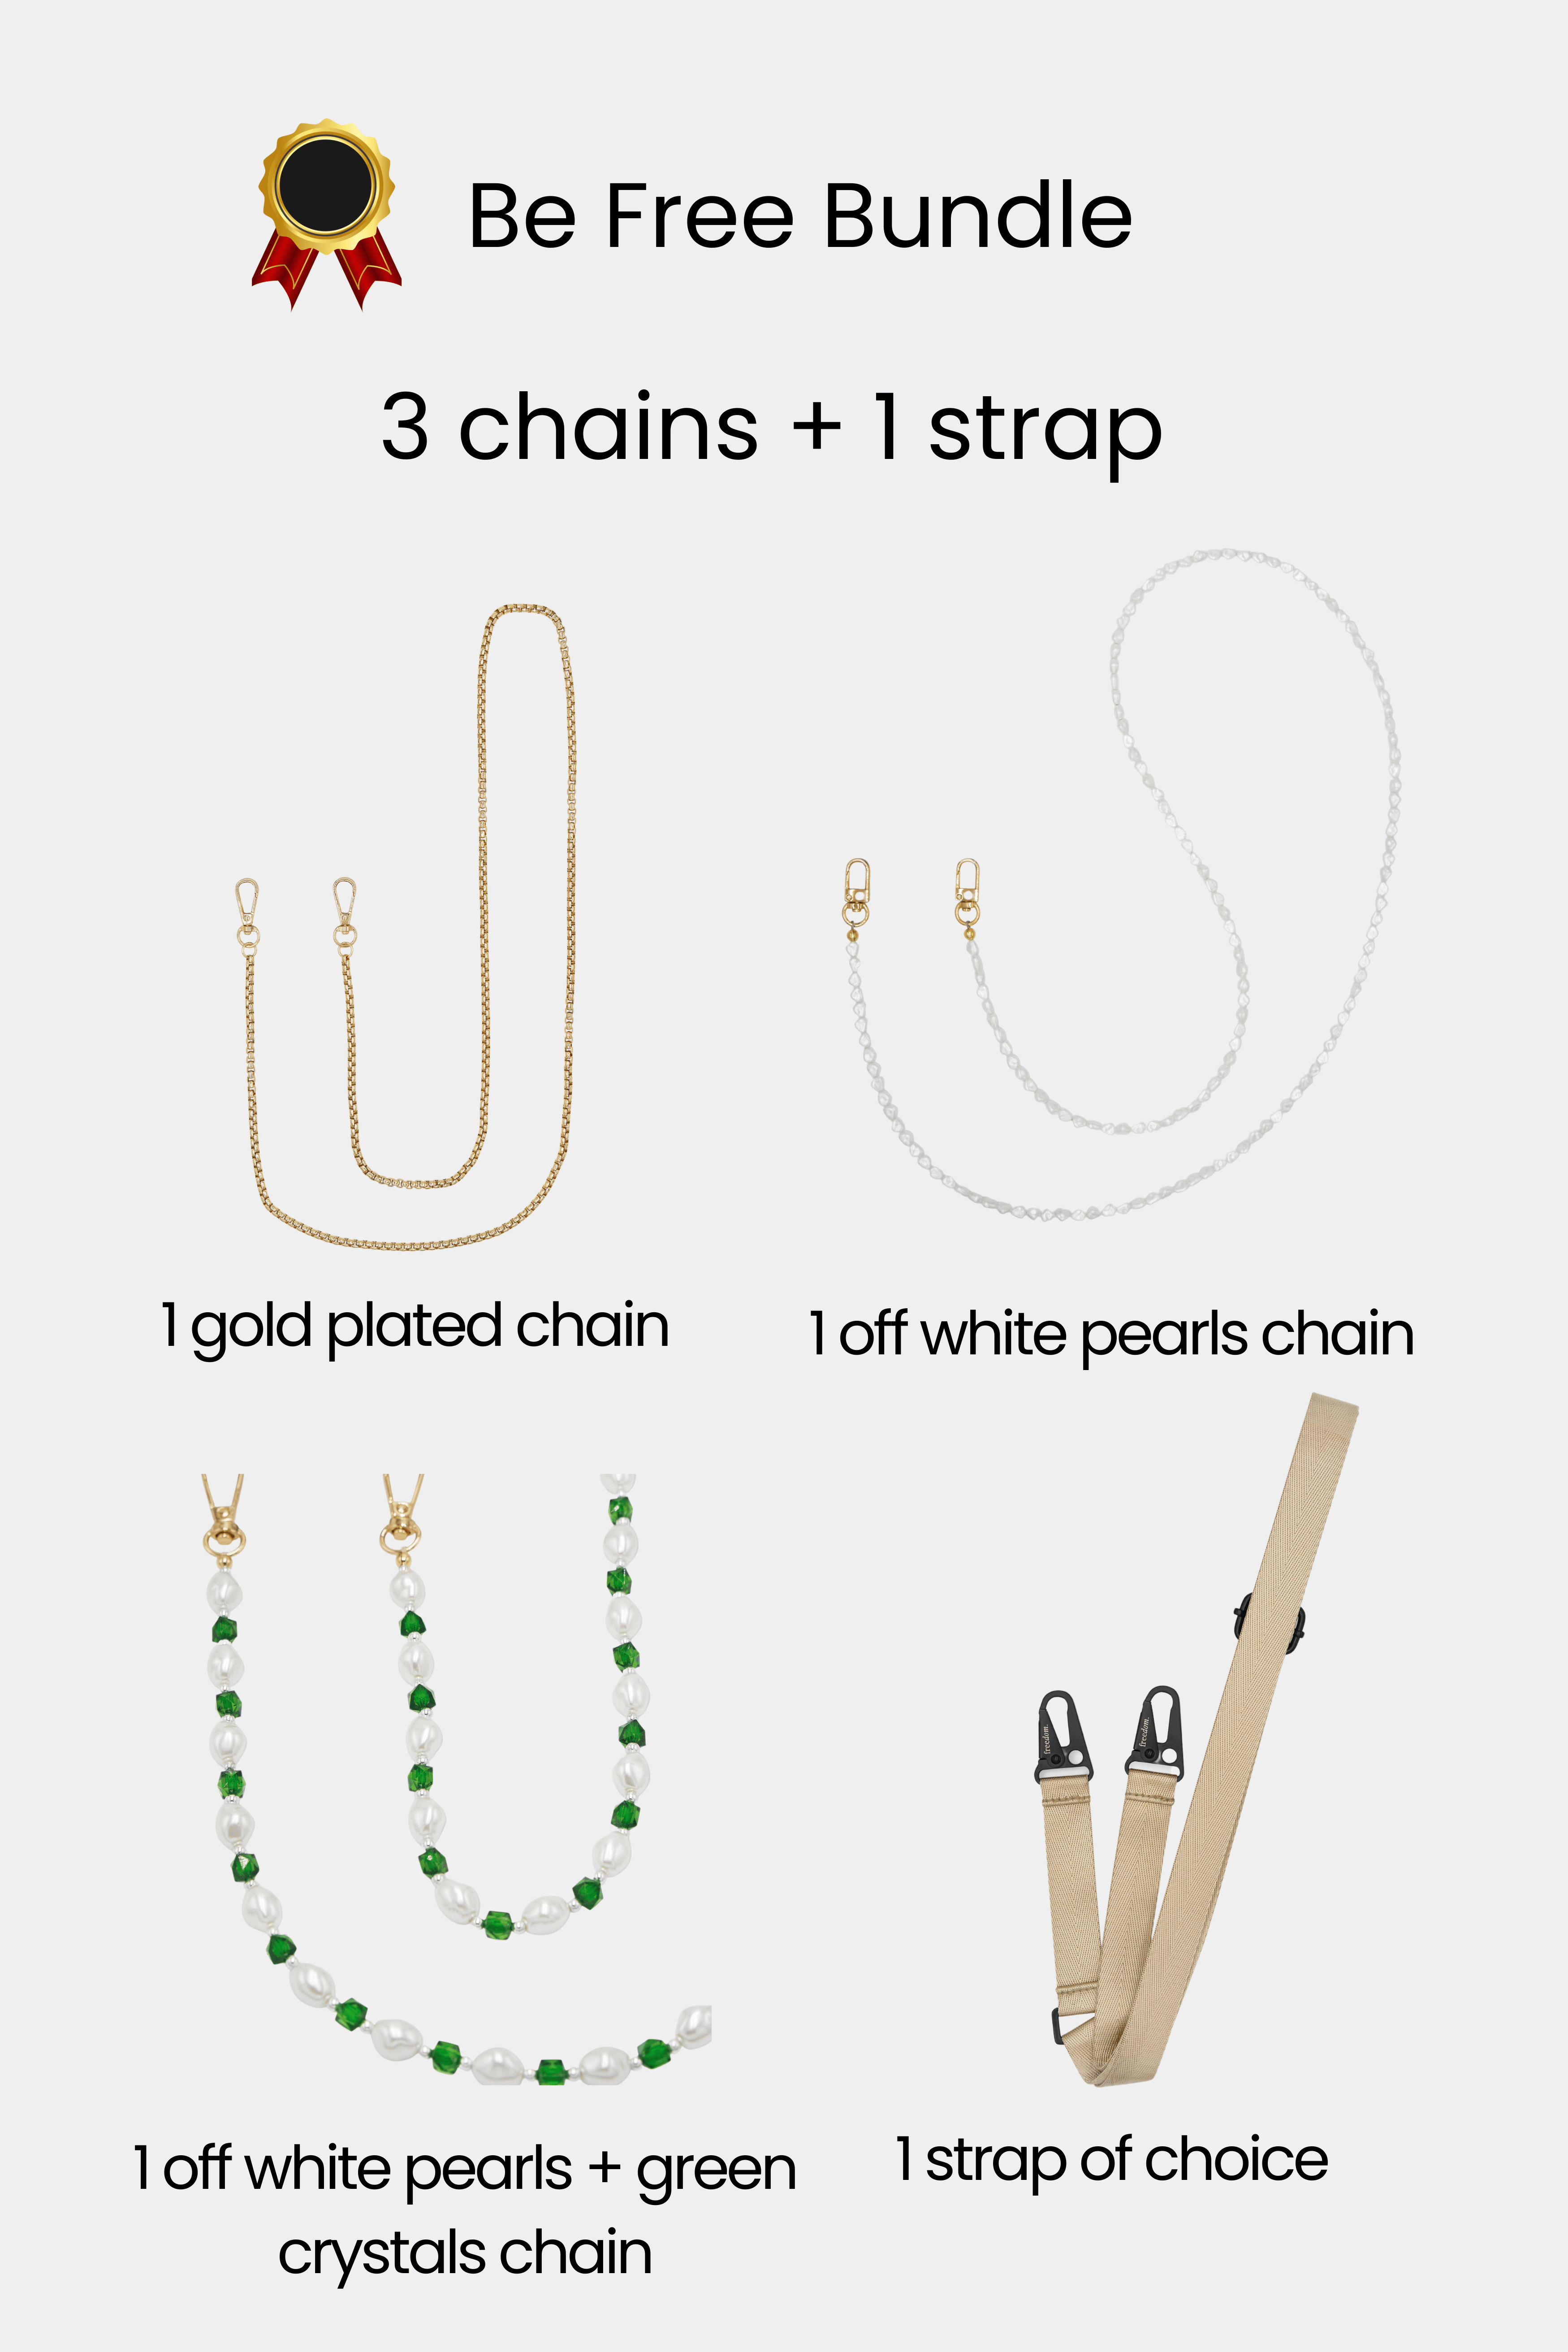 Be Free Bundle - 3 chains + 1 strap